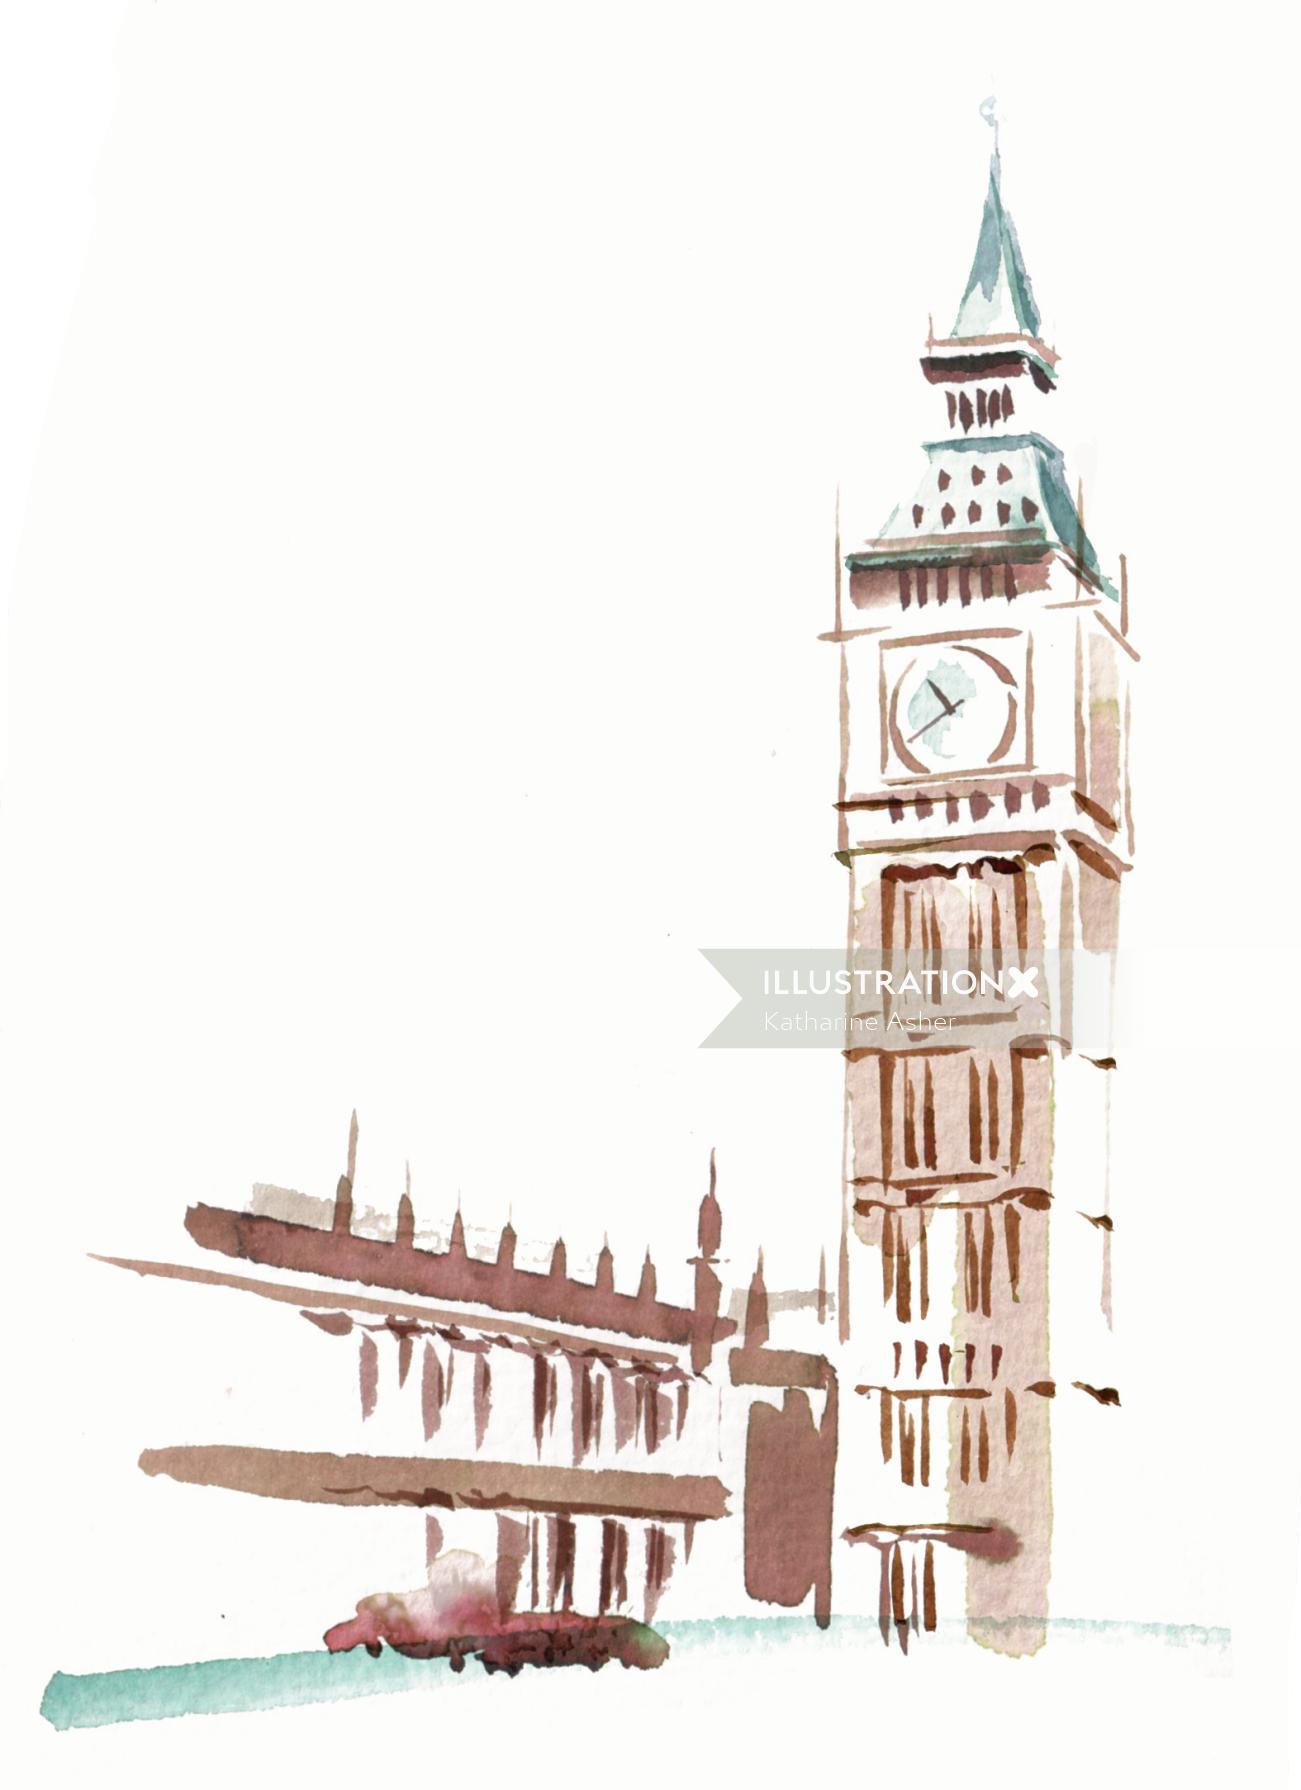 Ilustração da torre do relógio por Katharine Asher